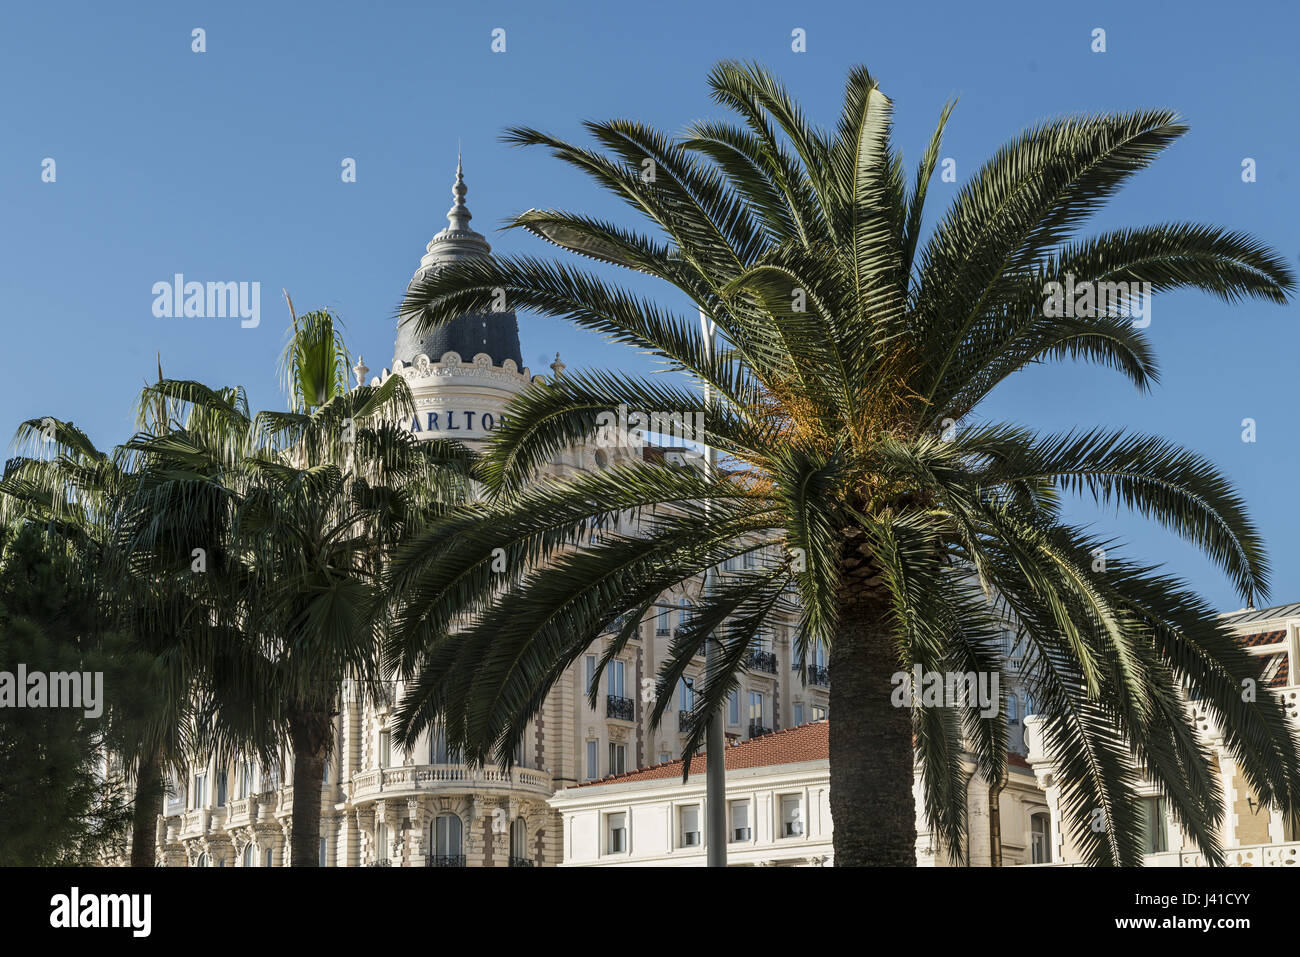 Carlton Hotel, façade, palmier, Cannes, Cote d'Azur, France Banque D'Images